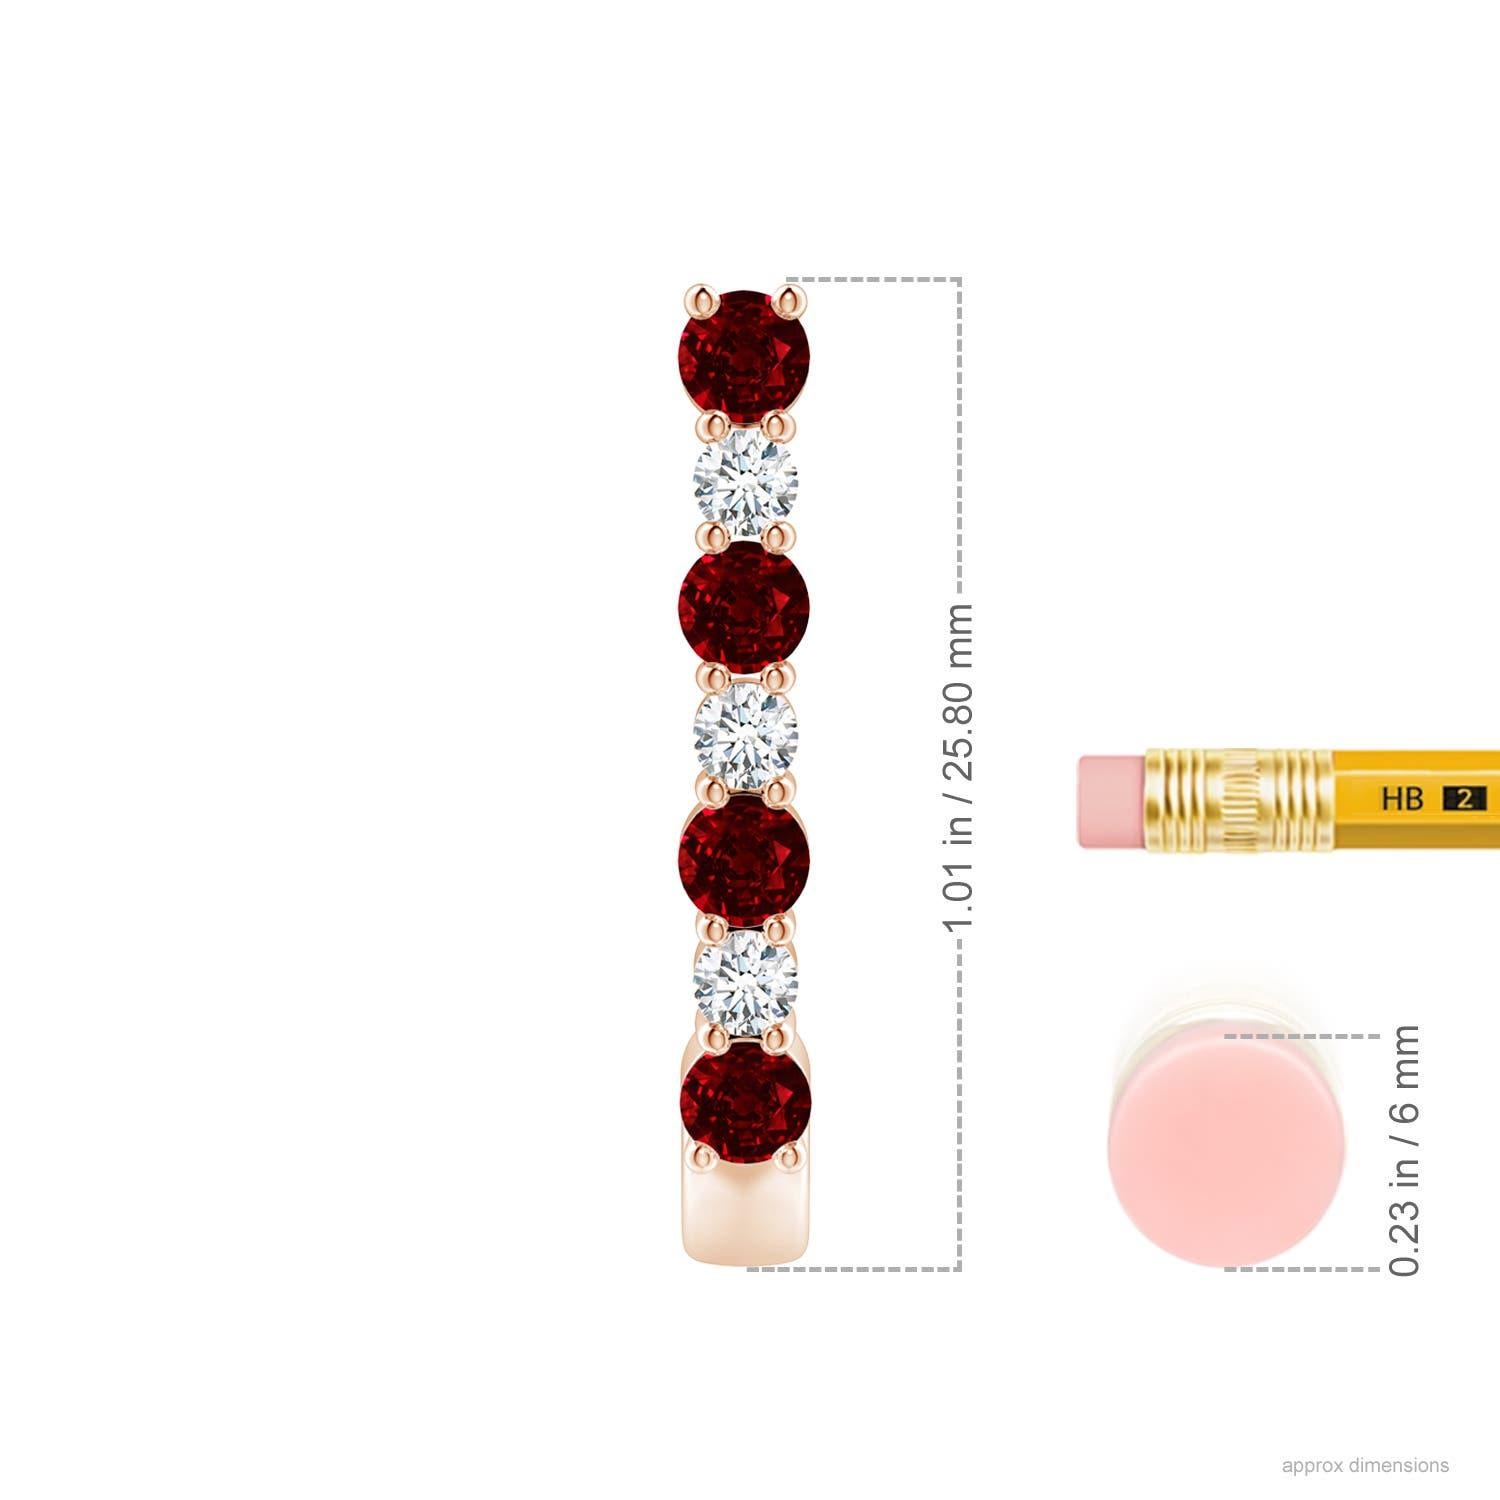 Ces étonnantes boucles d'oreilles en rubis et diamants sont délicatement réalisées en or rose 14k. Les anneaux en J sont alternativement cloutés de rubis rouge vif et de diamants étincelants pour un effet captivant.
Le rubis est la pierre de